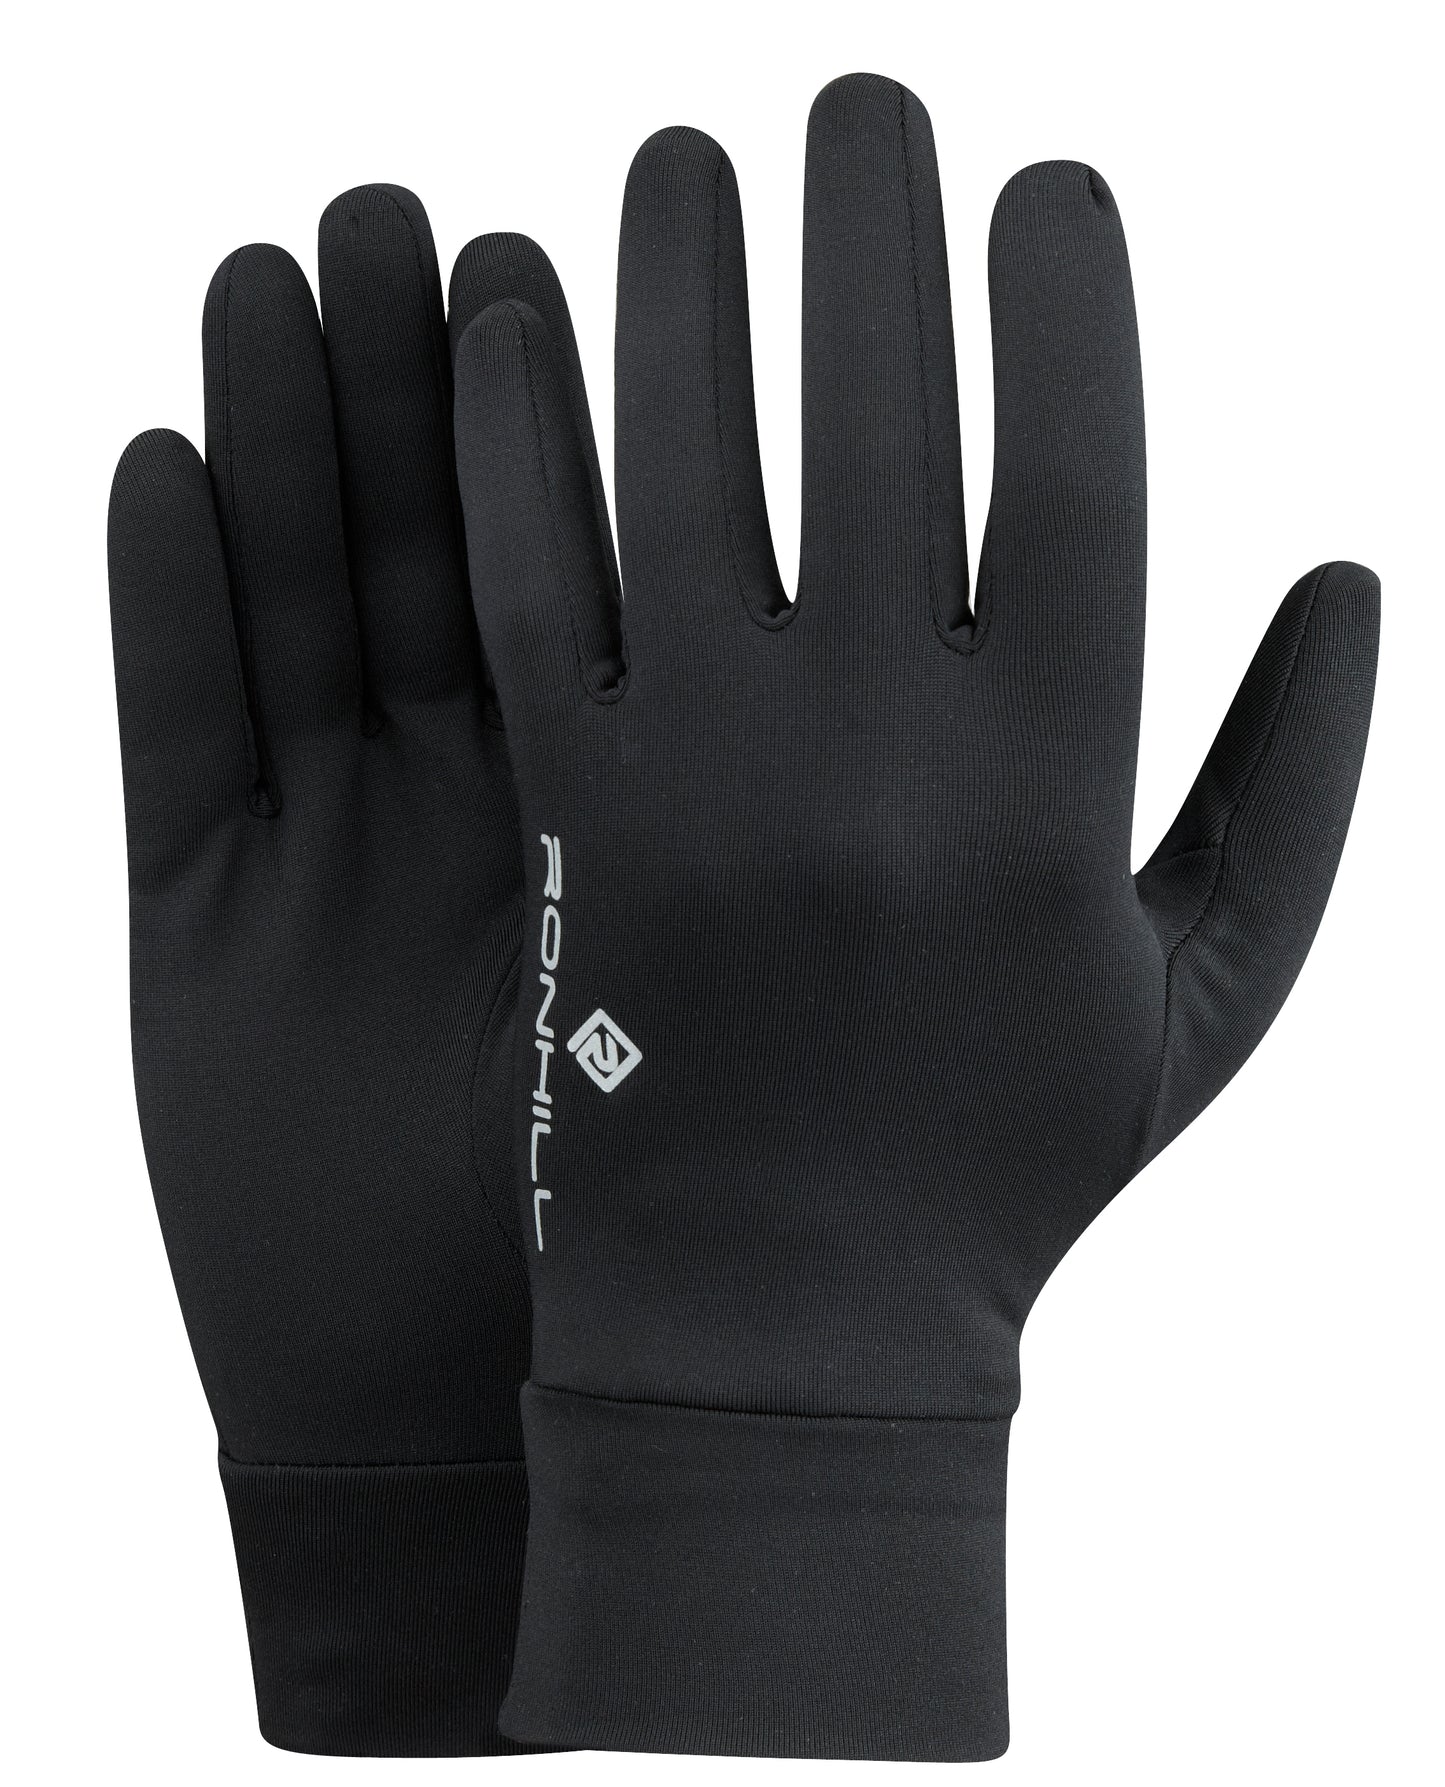 Ronhill Classic glove in black